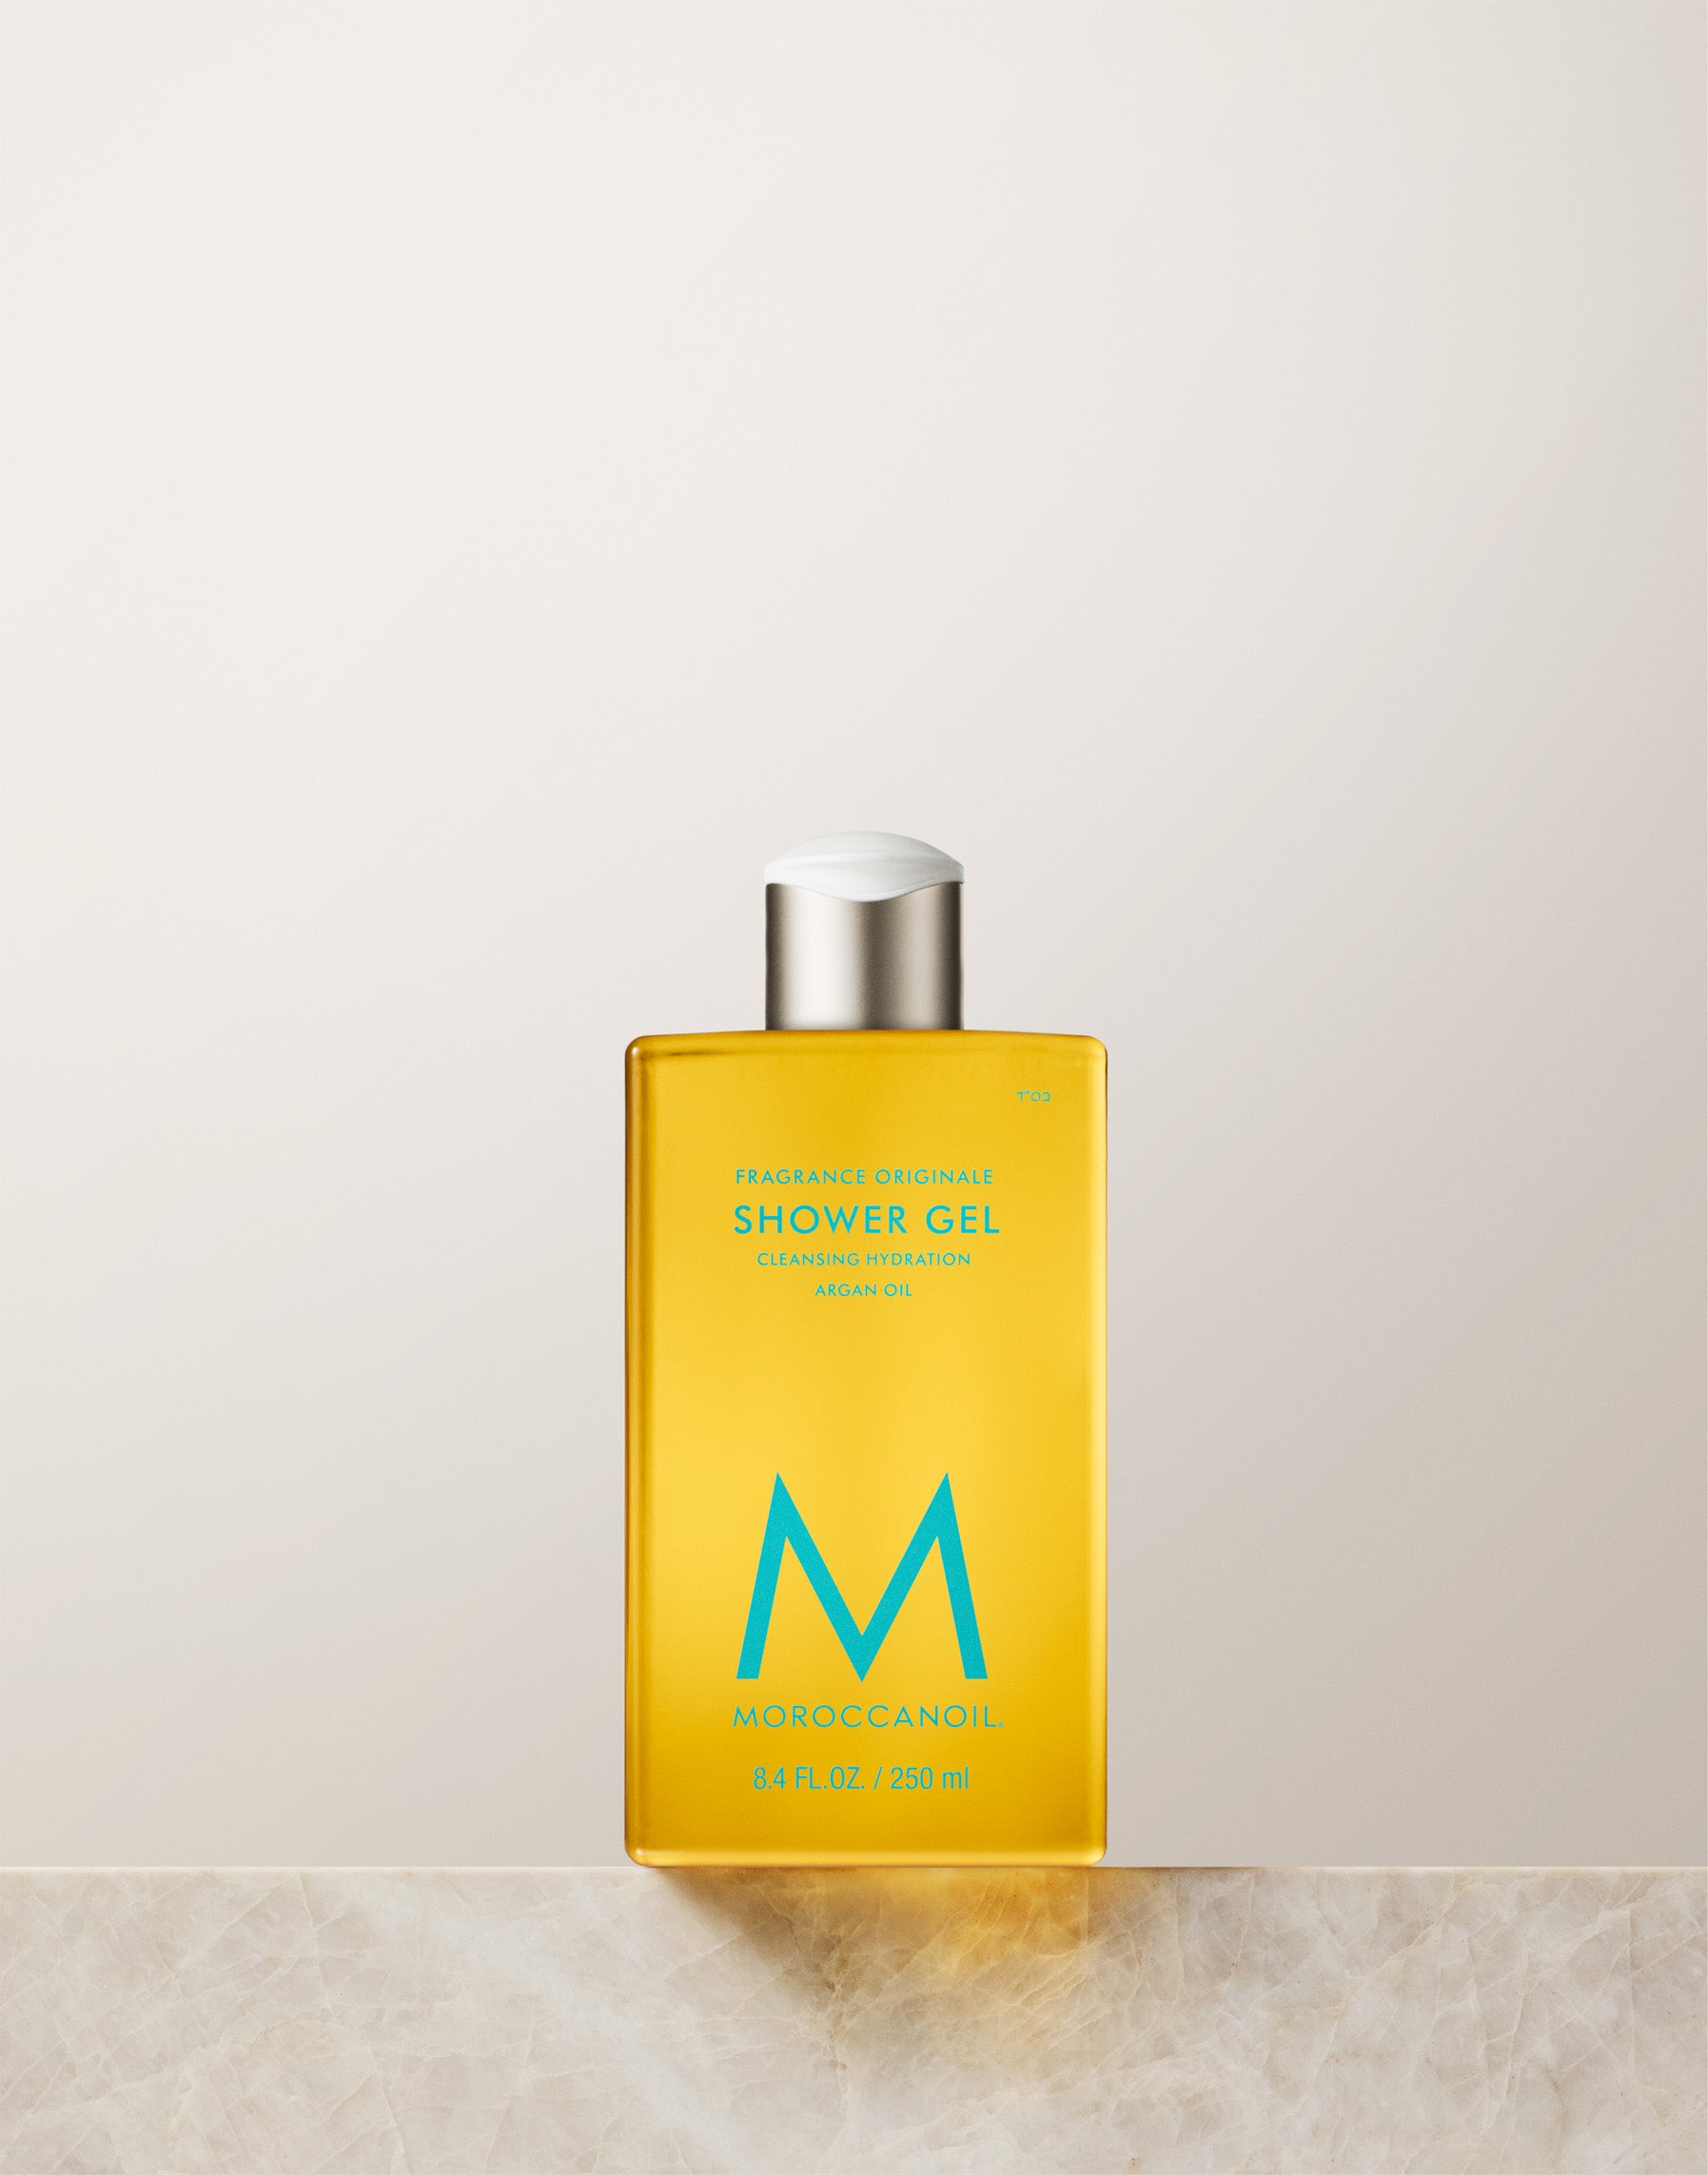 Moroccanoil Shower Gel Fragrance originale